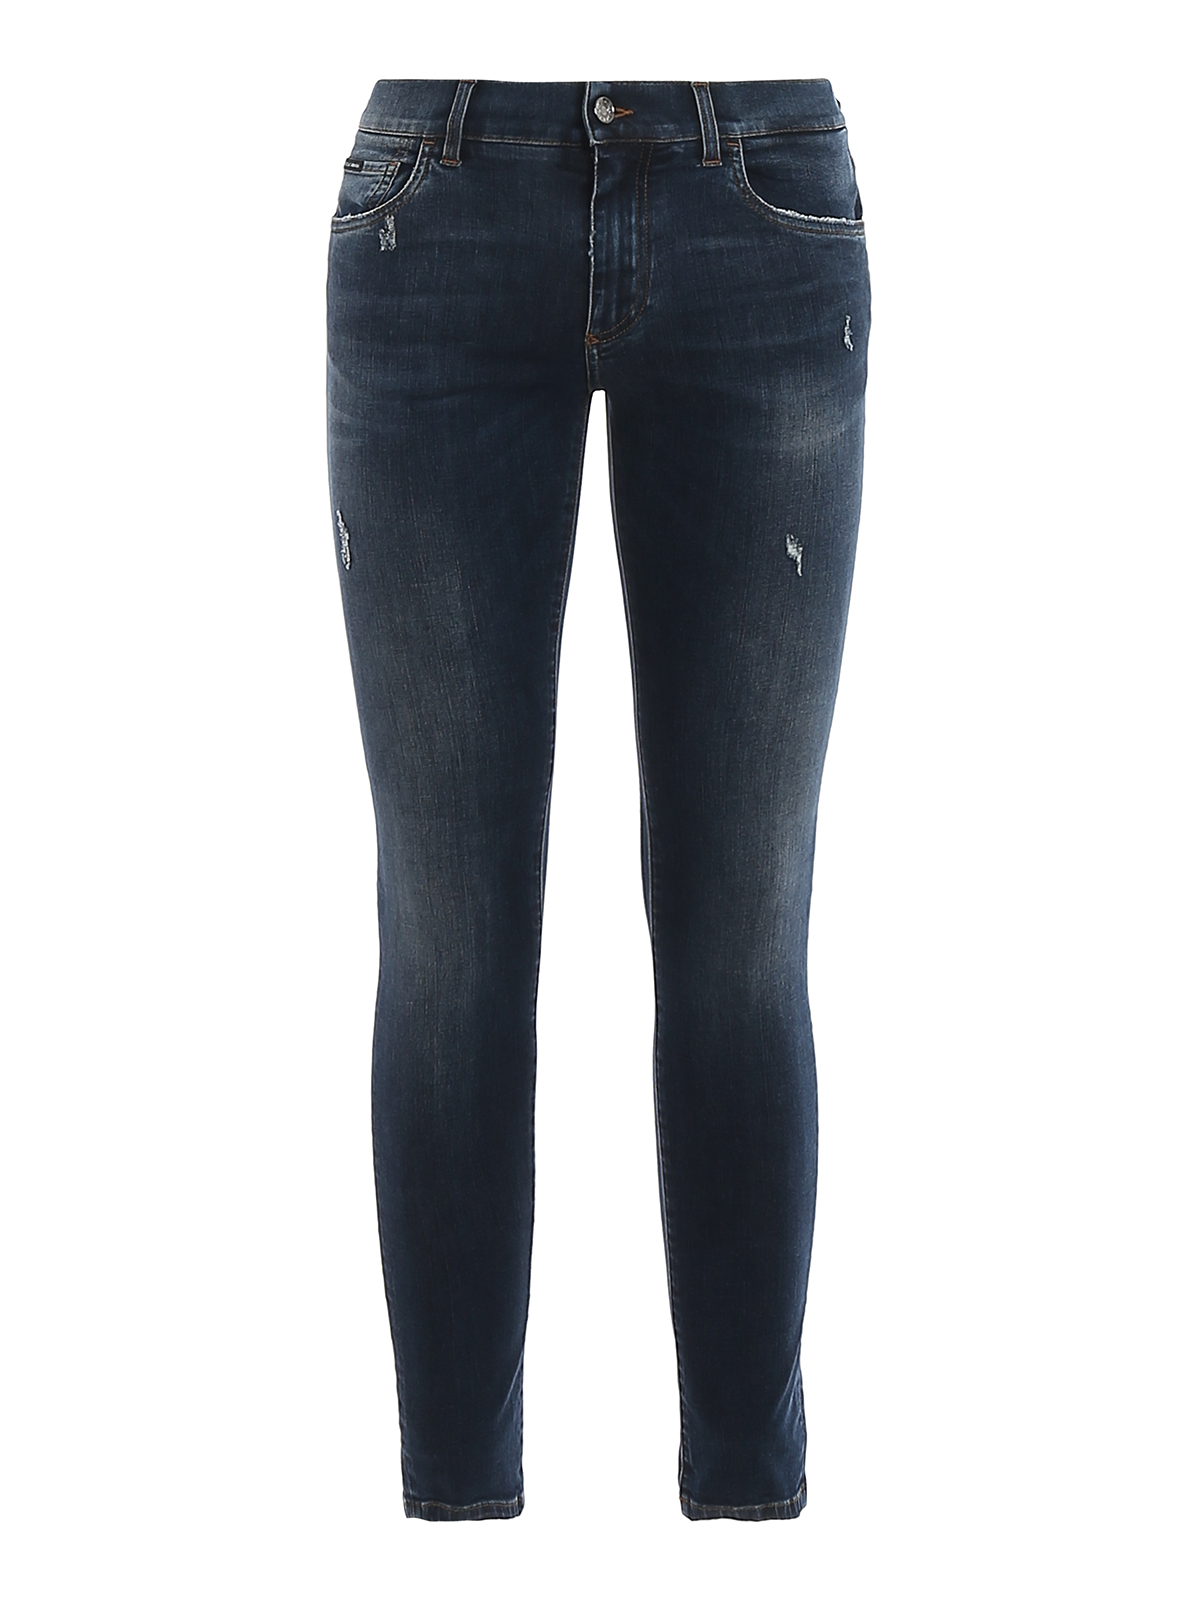 Dolce & Gabbana Scraped Skinny Jeans In Dark Wash